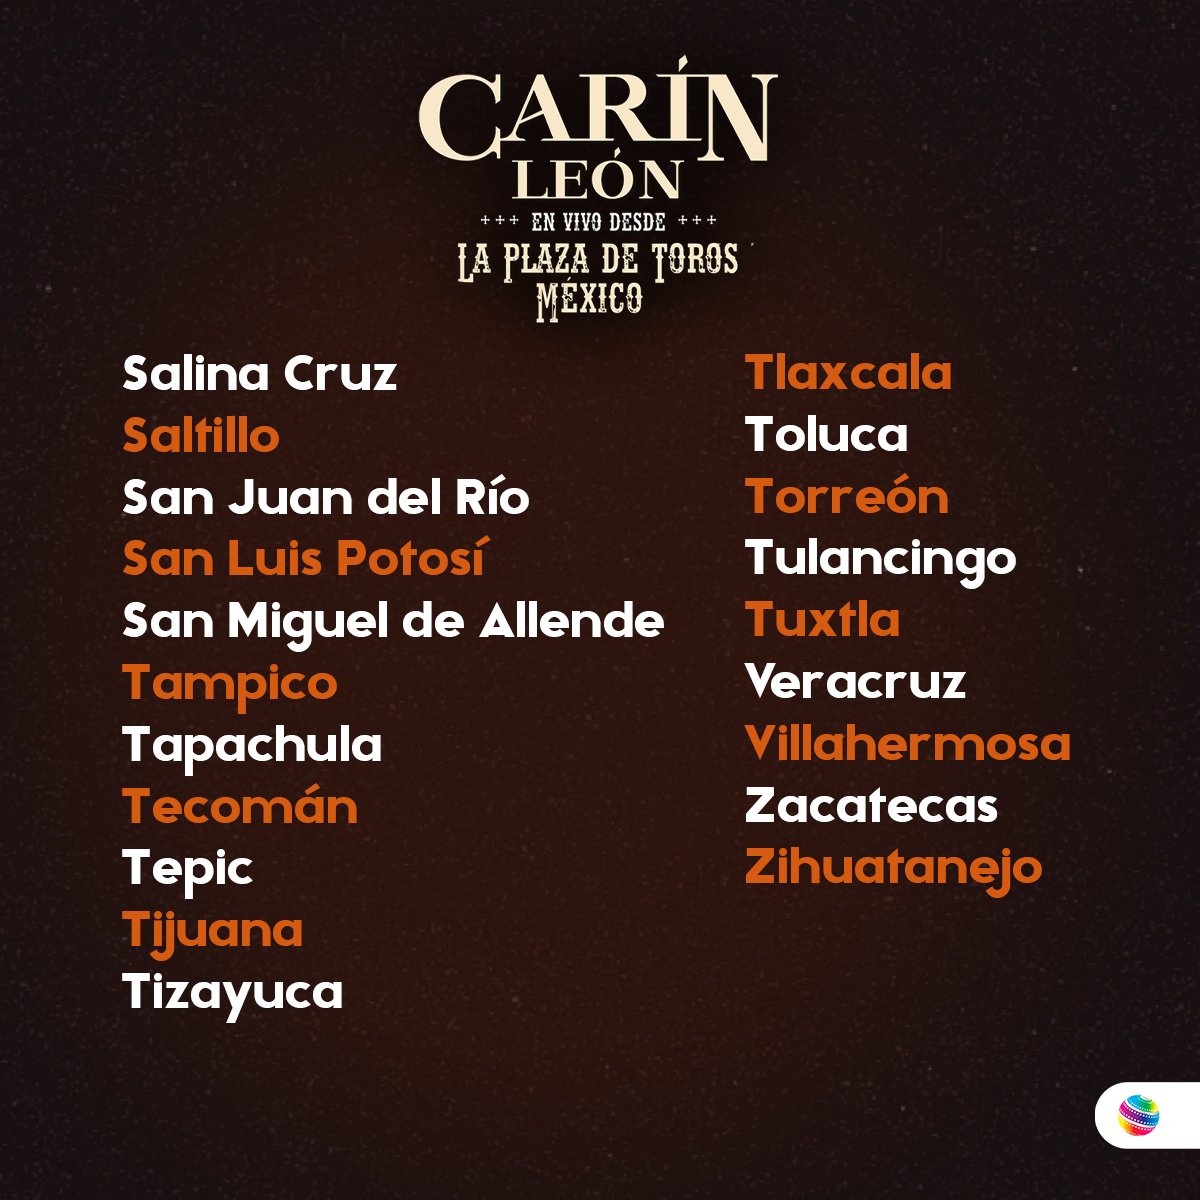 Carín León